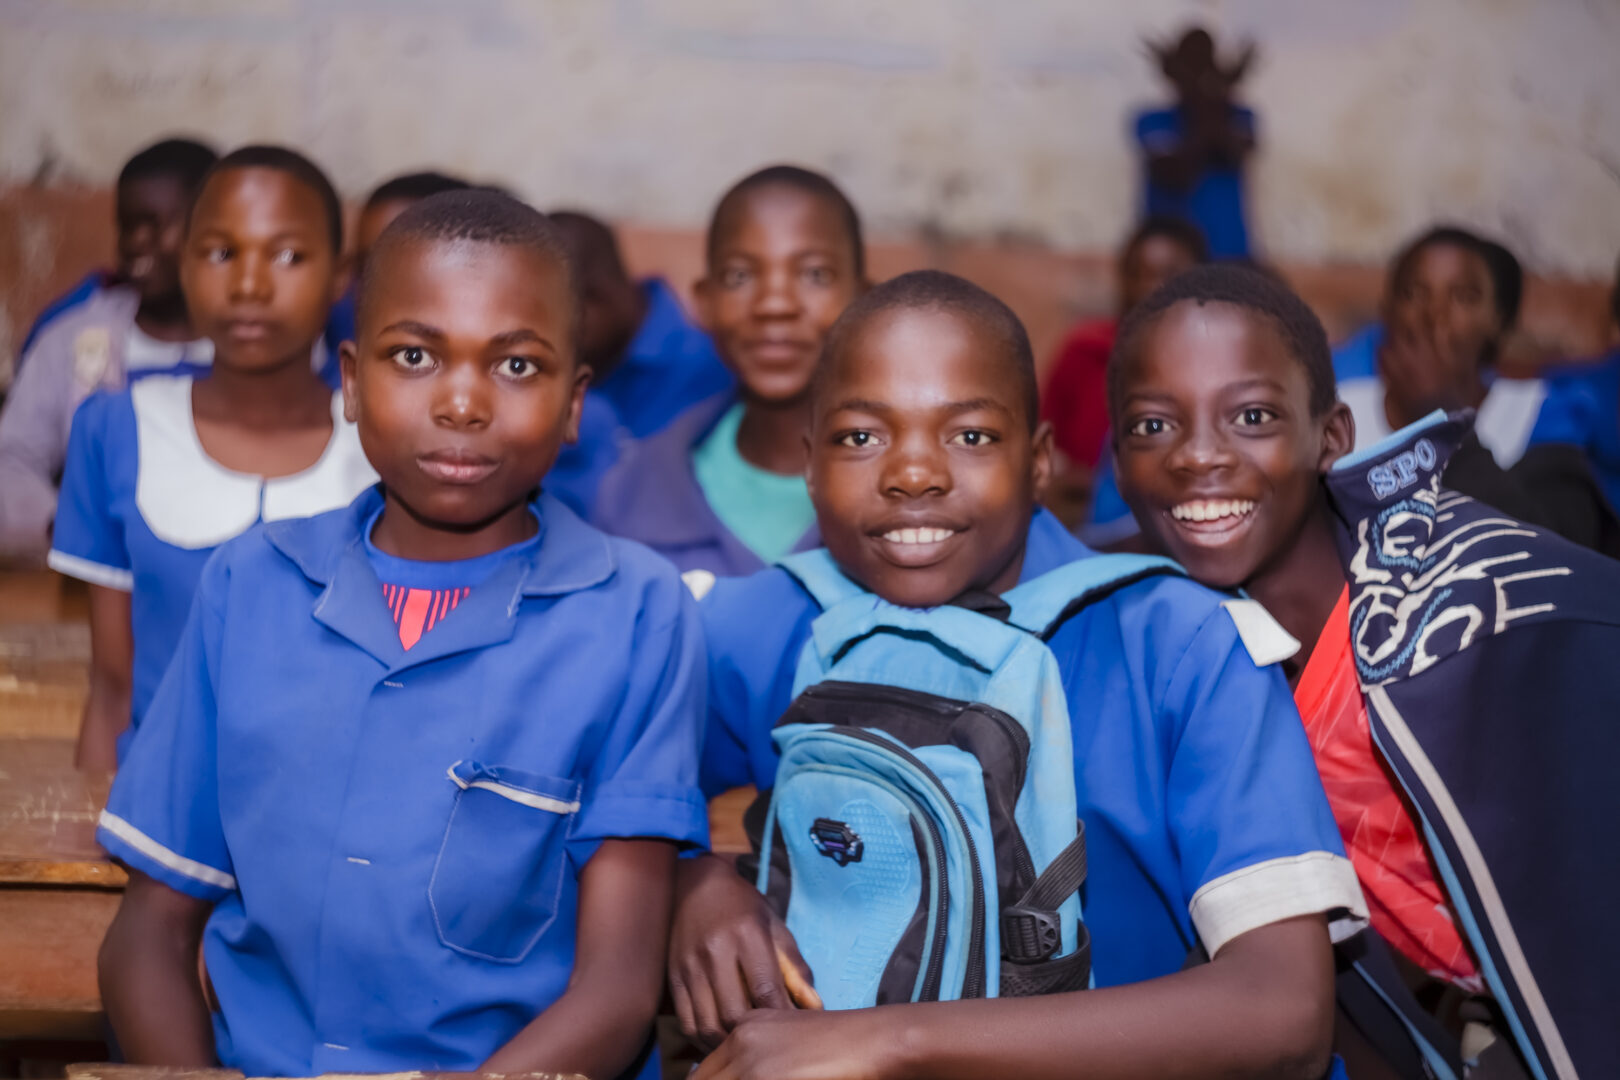 Edukans-NL-mentorschap-schooluitval-Malawi-onderwijs-school-impact-klaslokaal